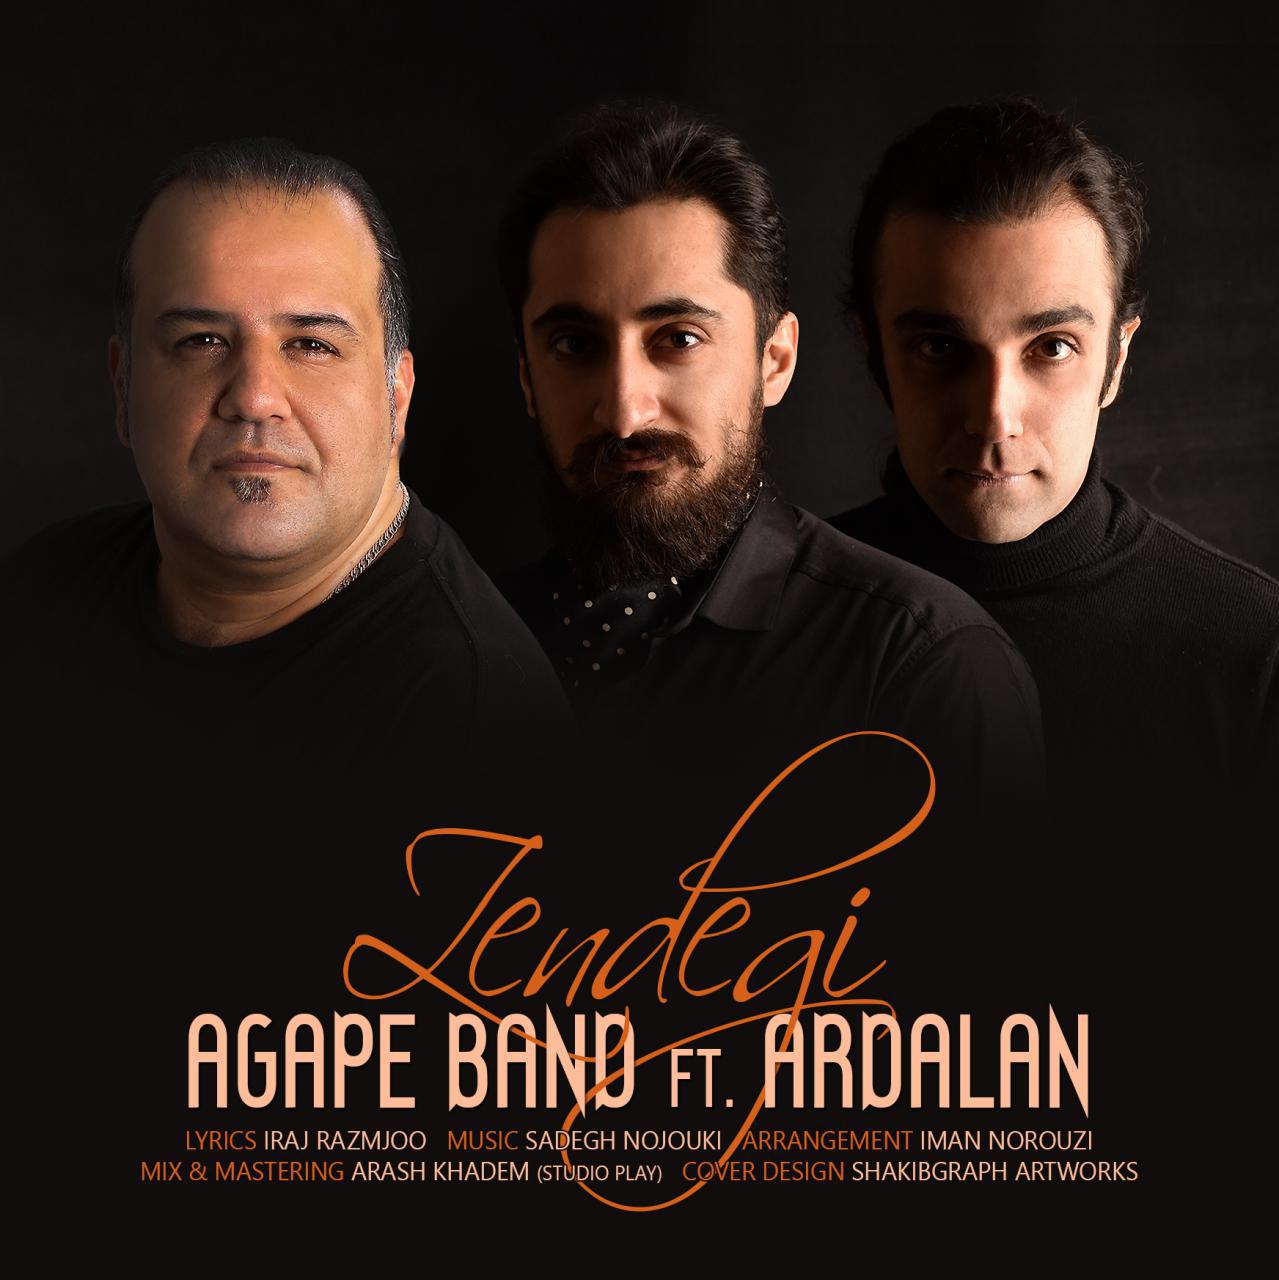 Agape Band – Zendegi (Ft. Ardalan)